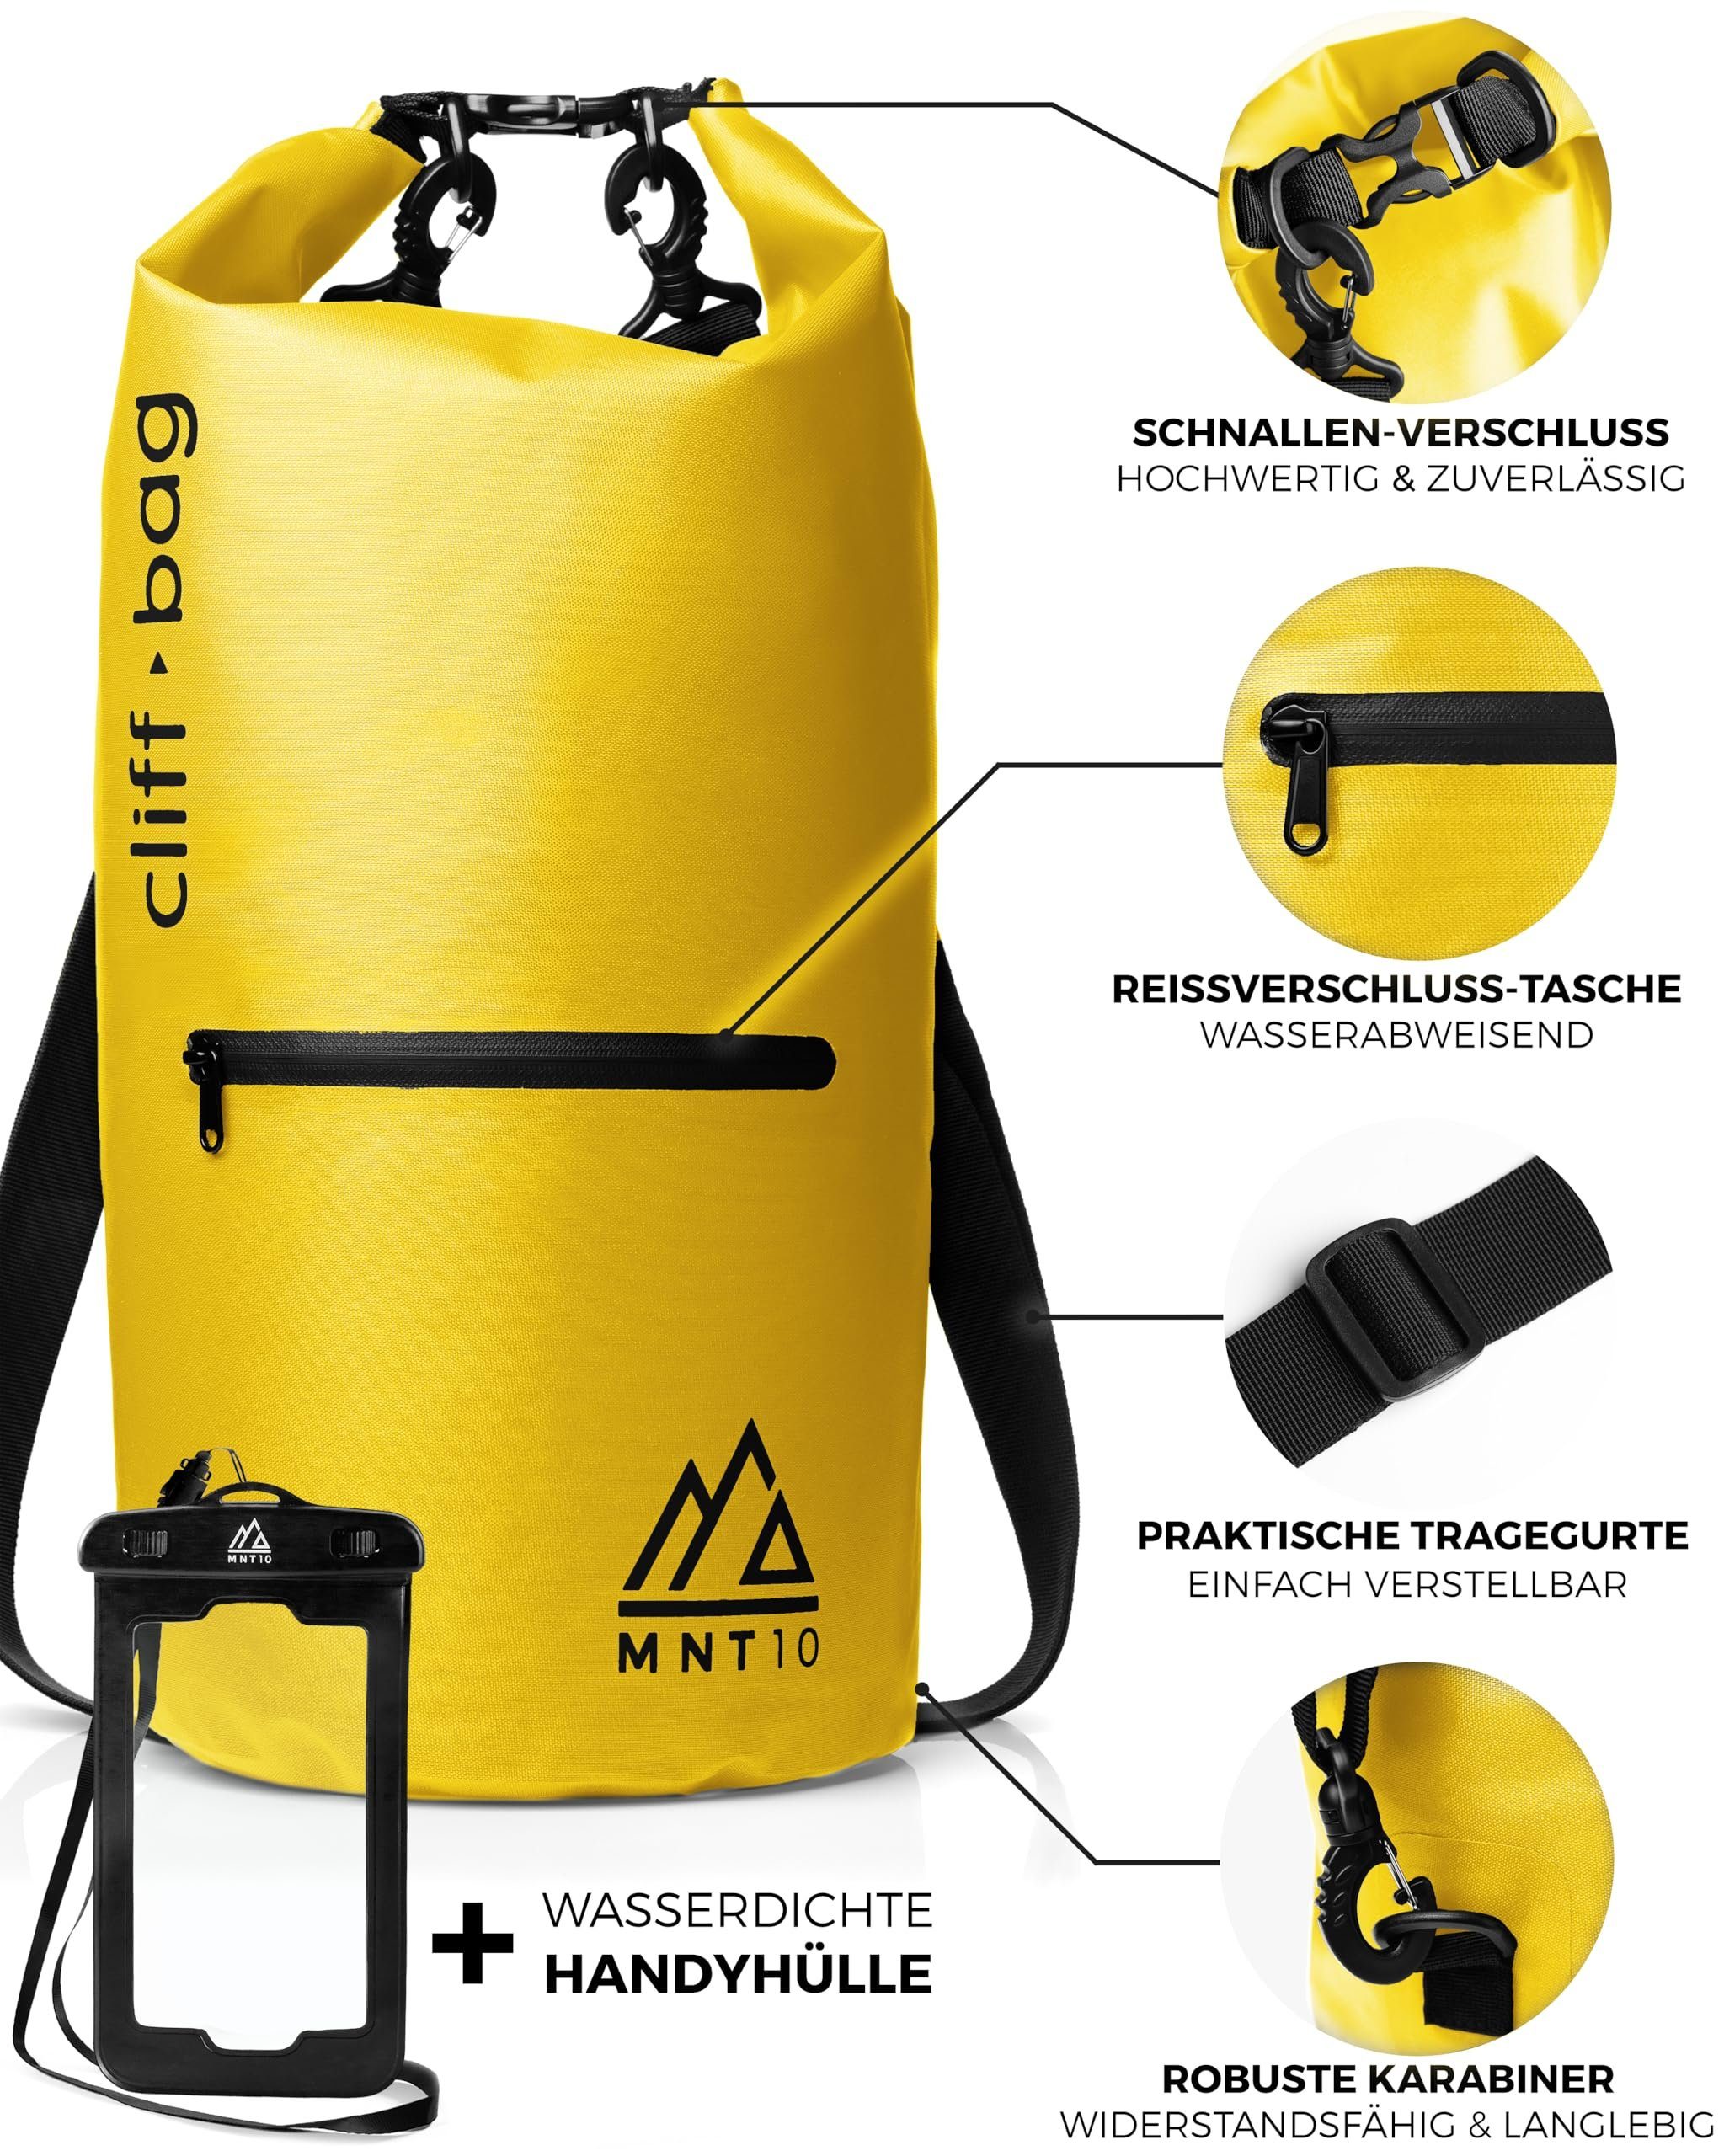 30L, Yellow Rucksack “Cliff-Bag” Drybag Dry I 40L MNT10 MNT10 20L, Bag in Drybag